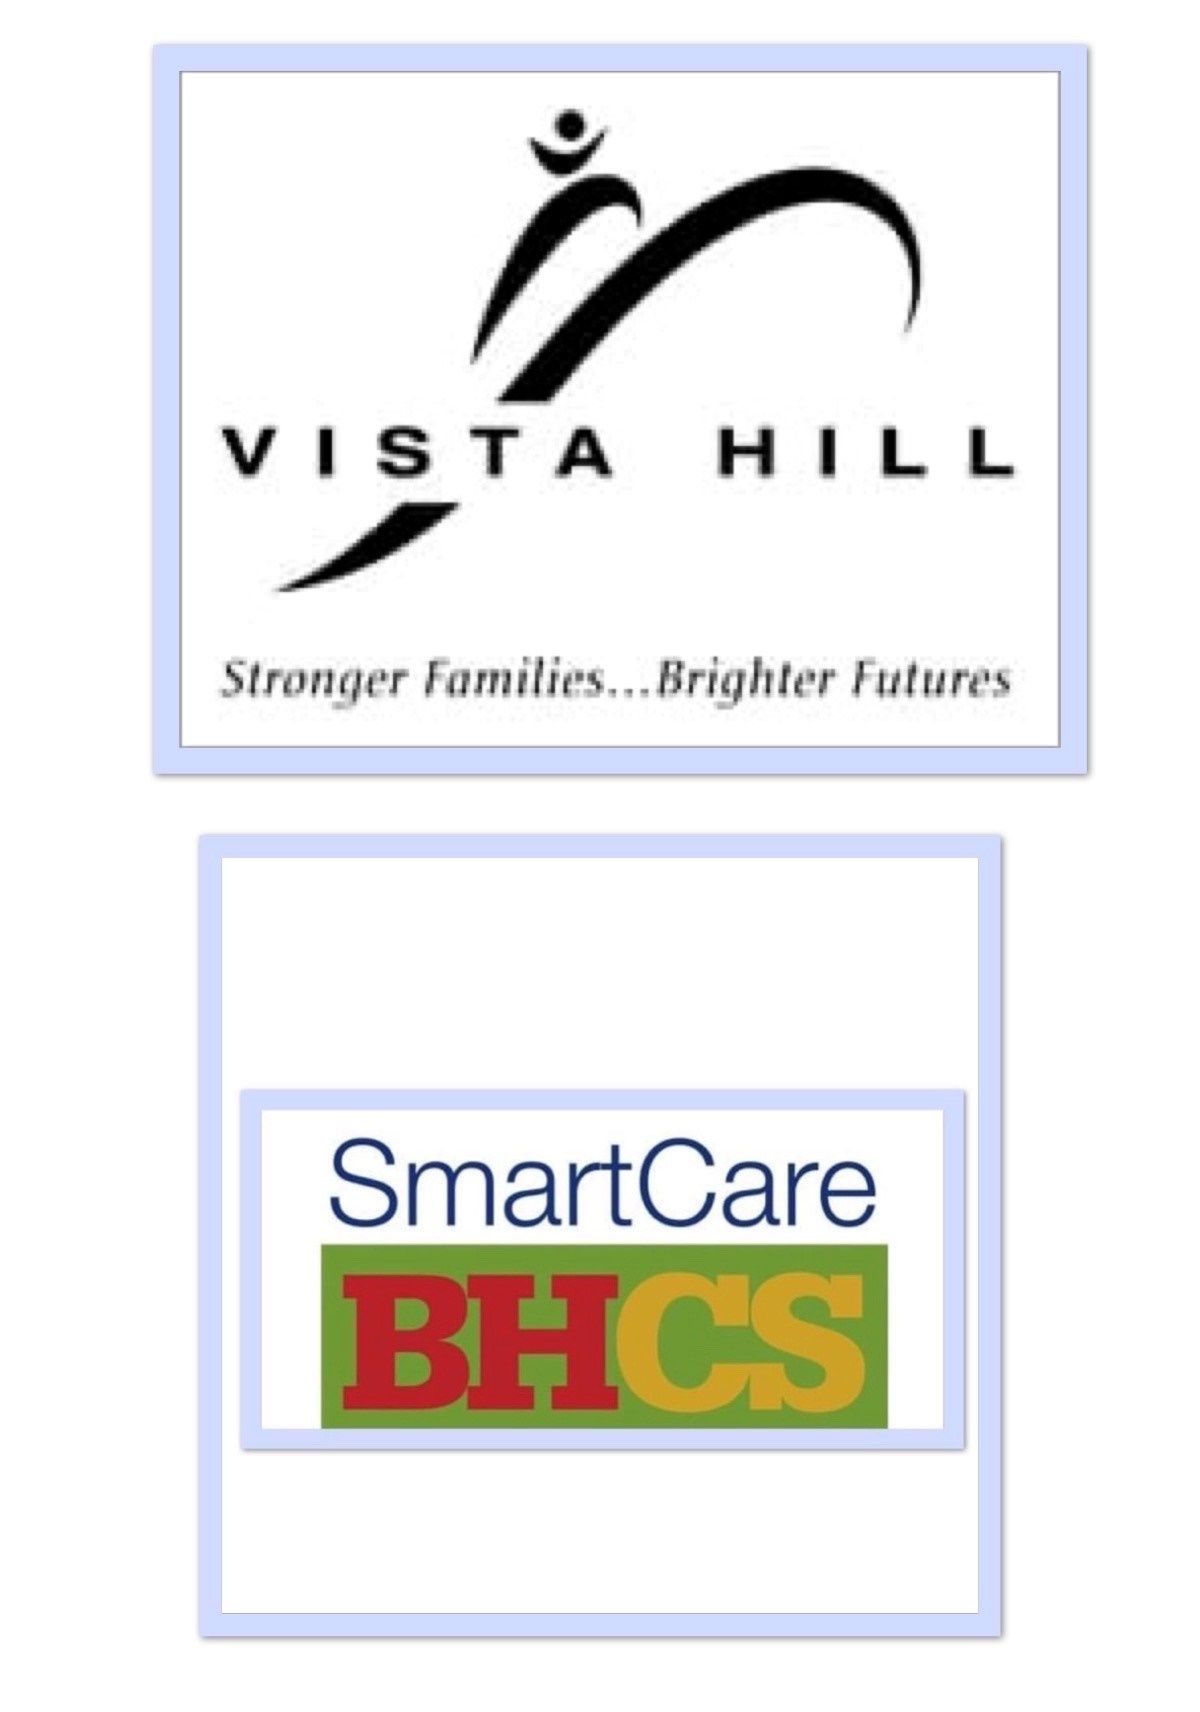 Vista Hill SmartCare BHCS